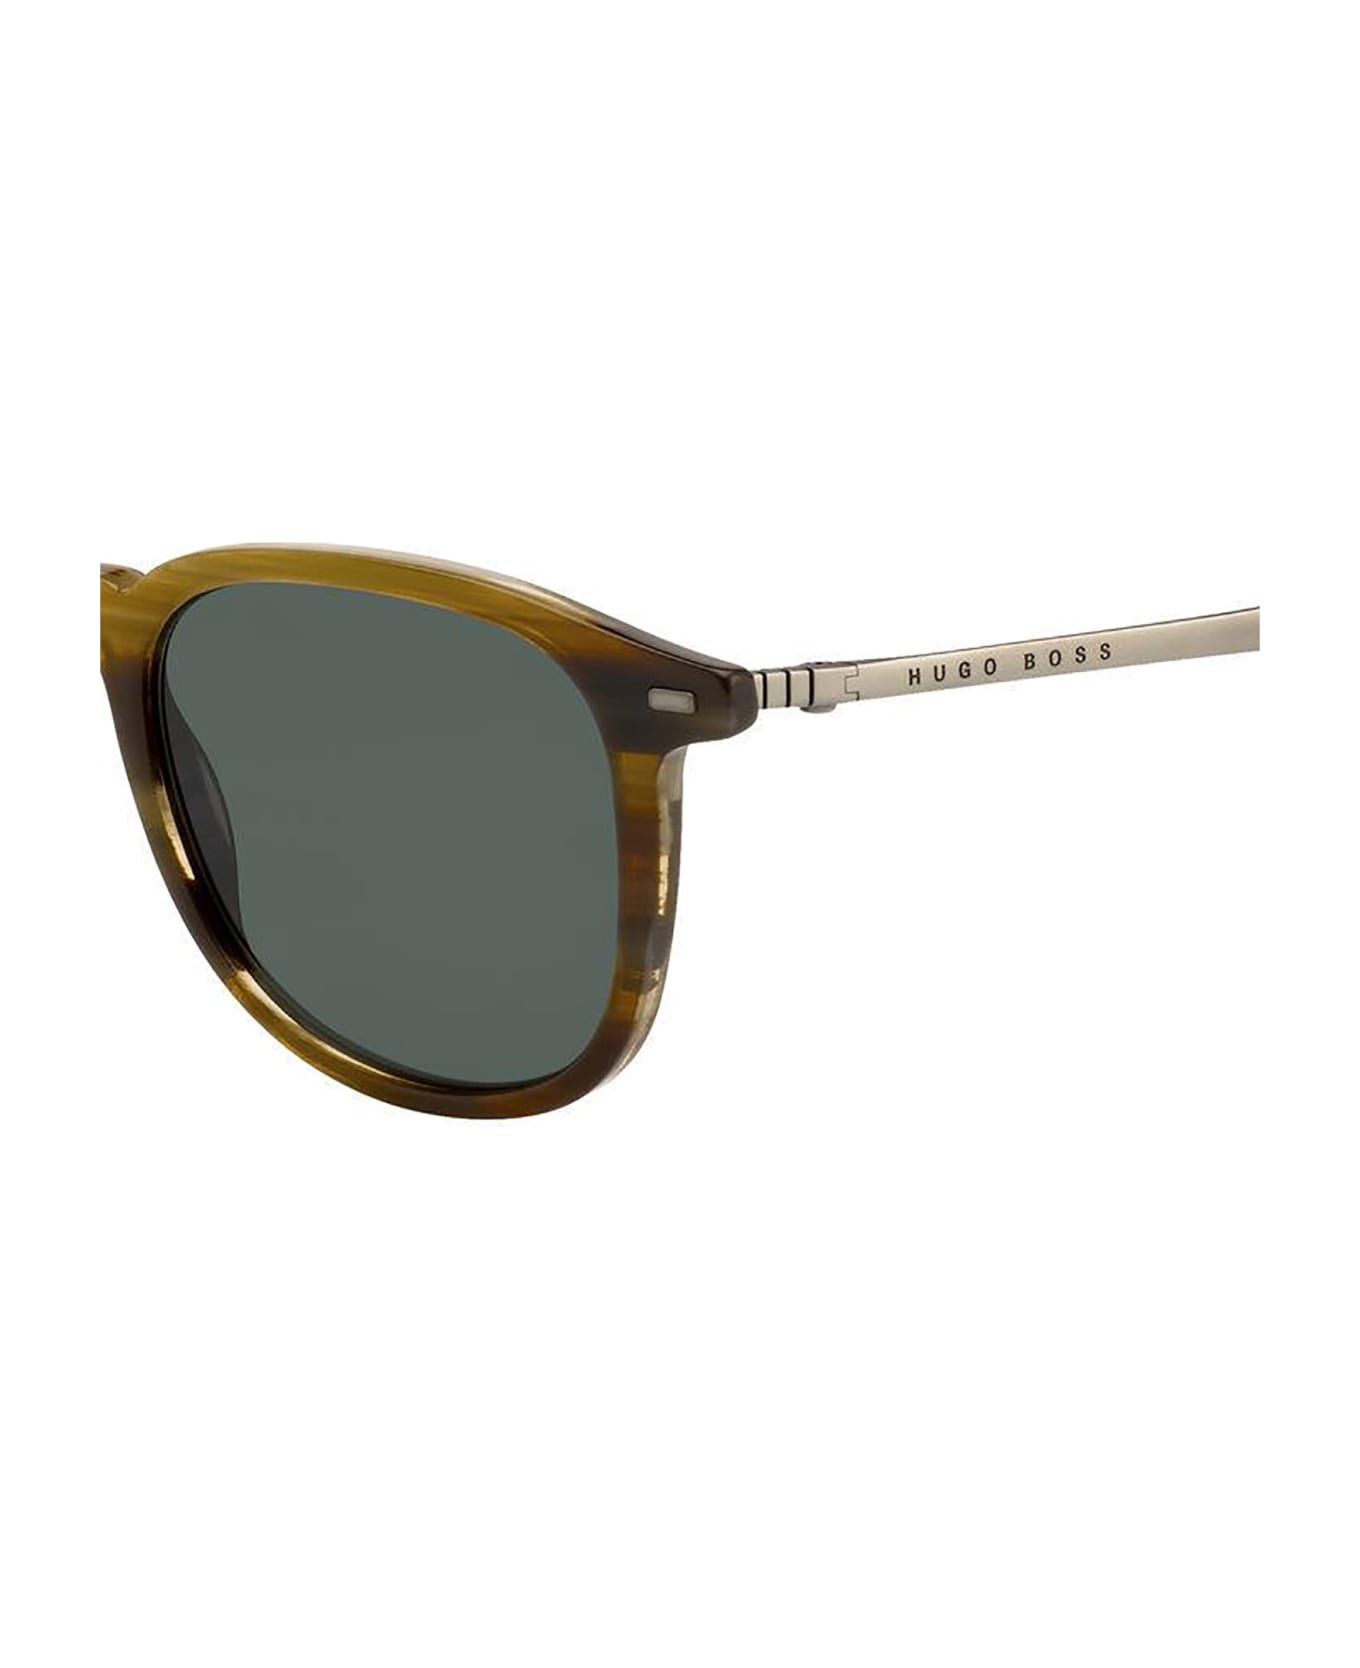 Hugo Boss BOSS 1094/S Sunglasses - /qt Brown Horn